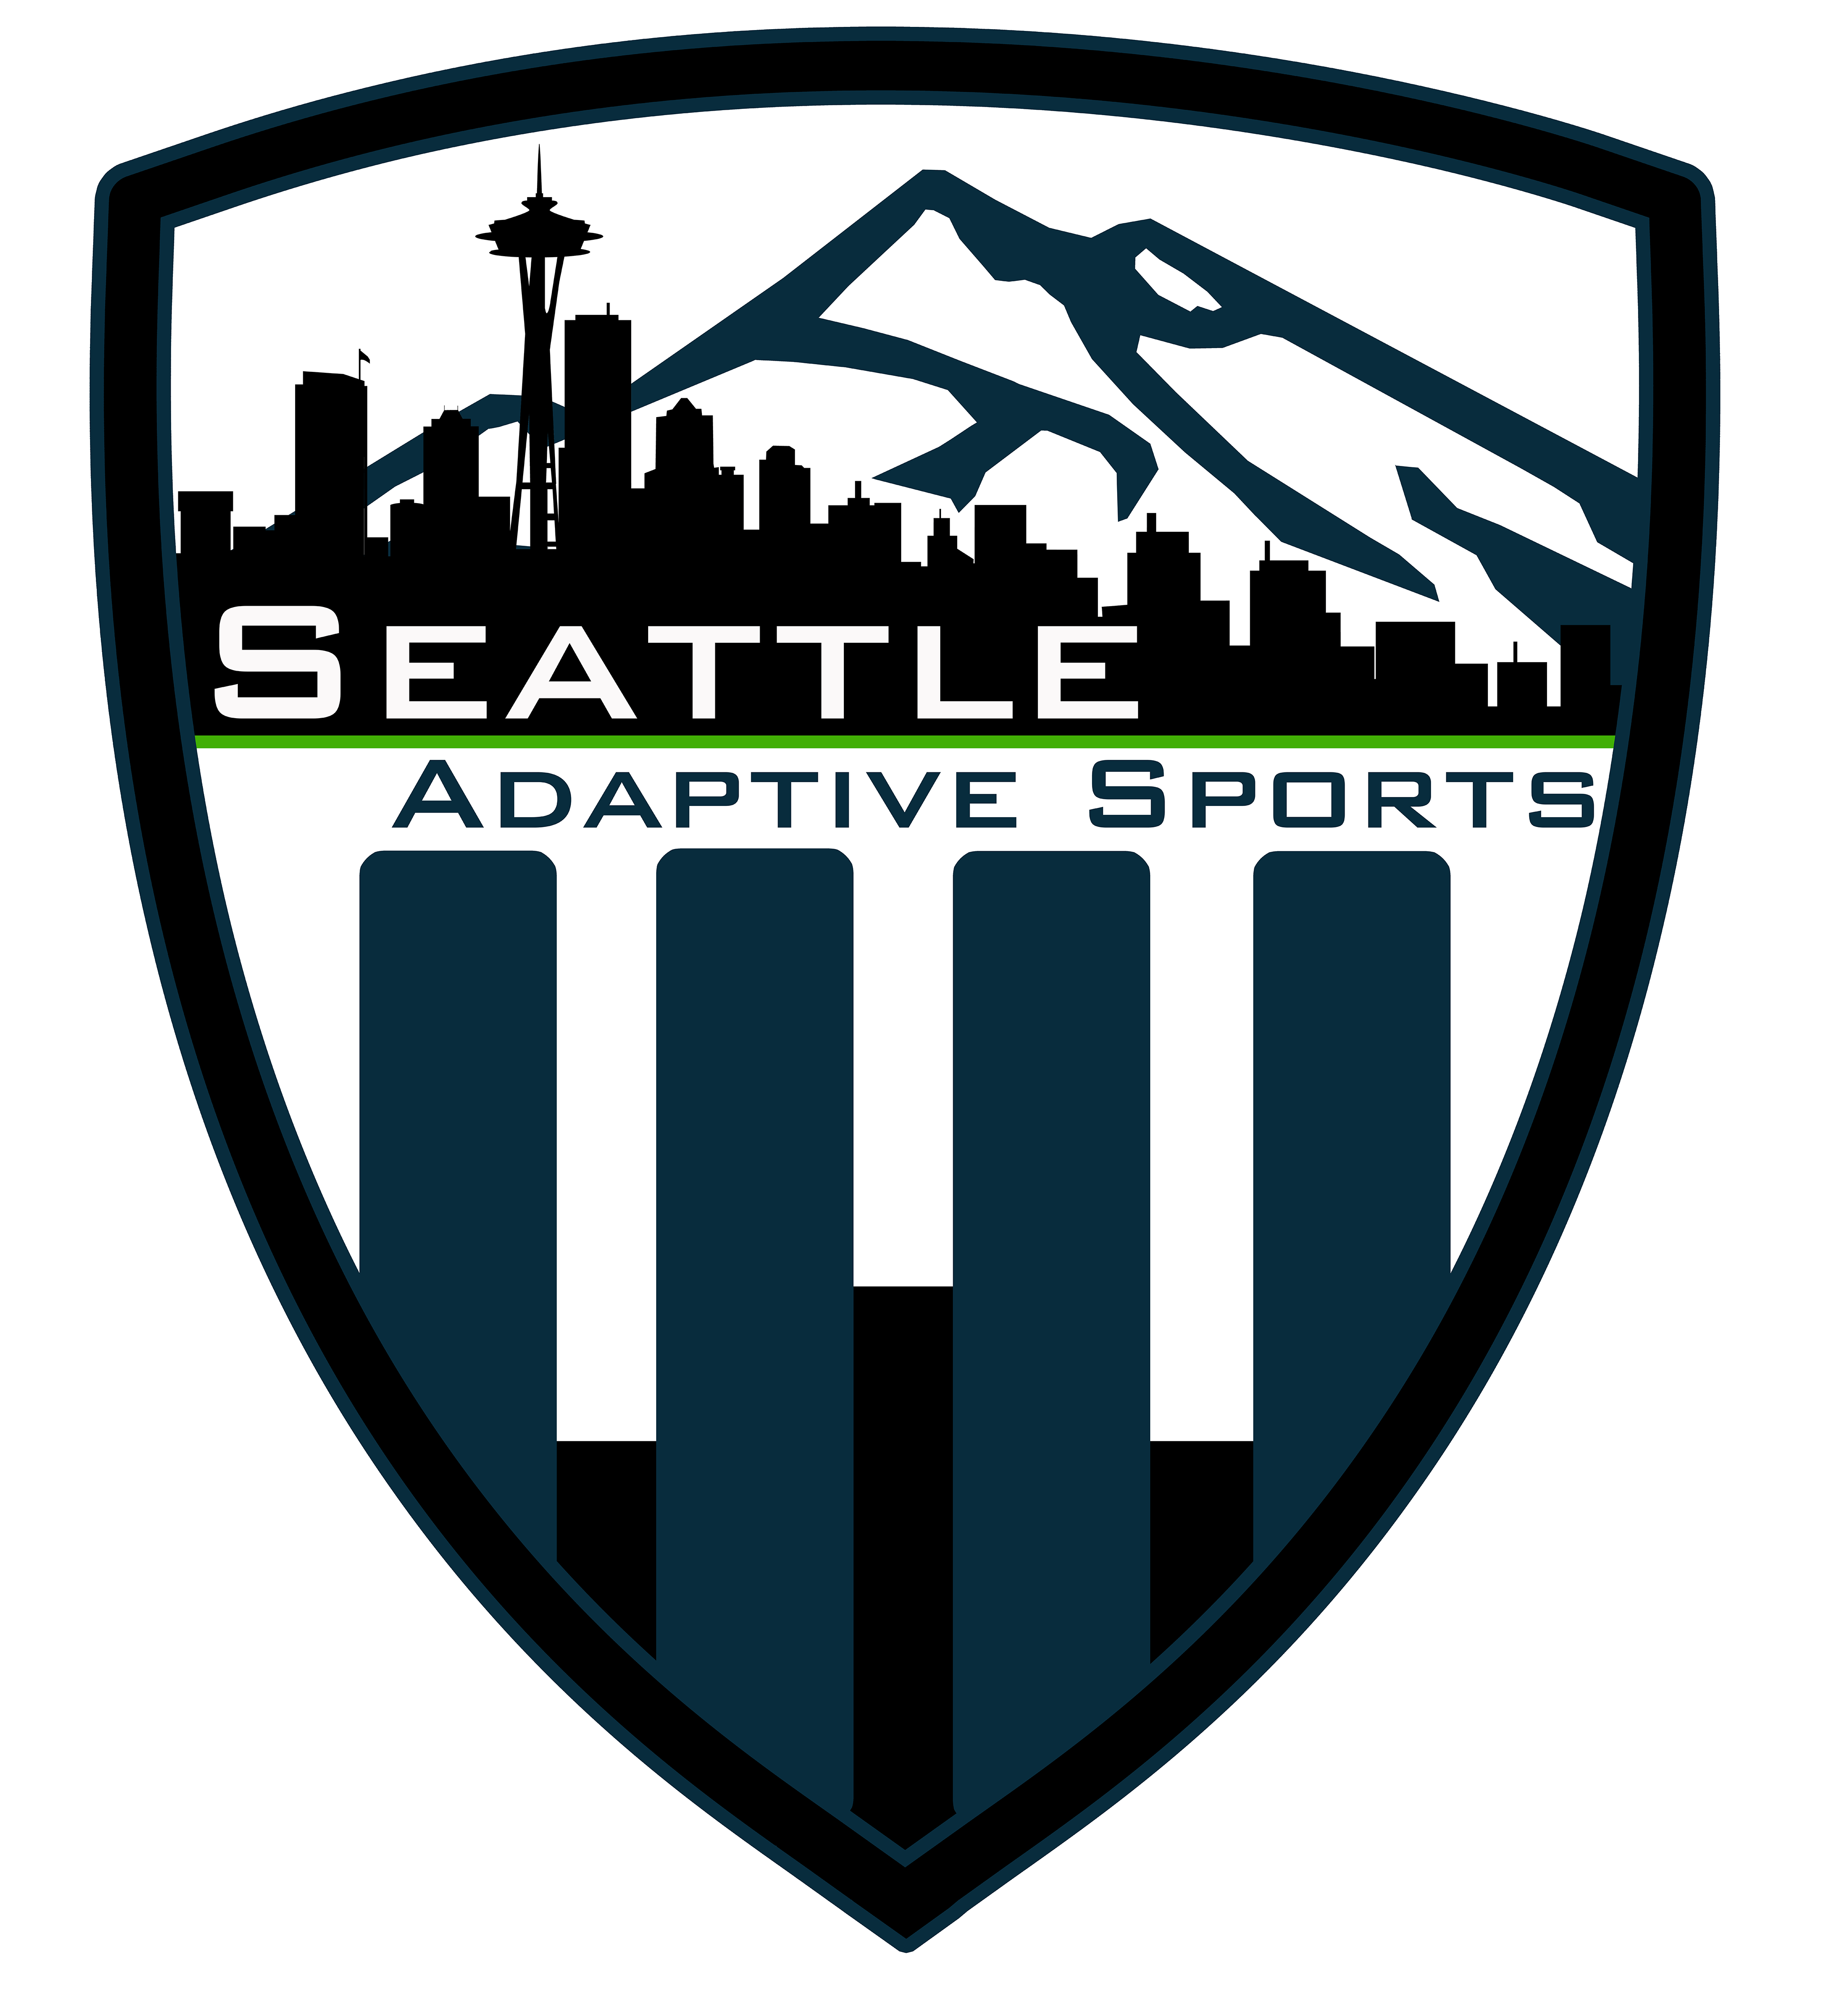 Seattle Adaptive Sports